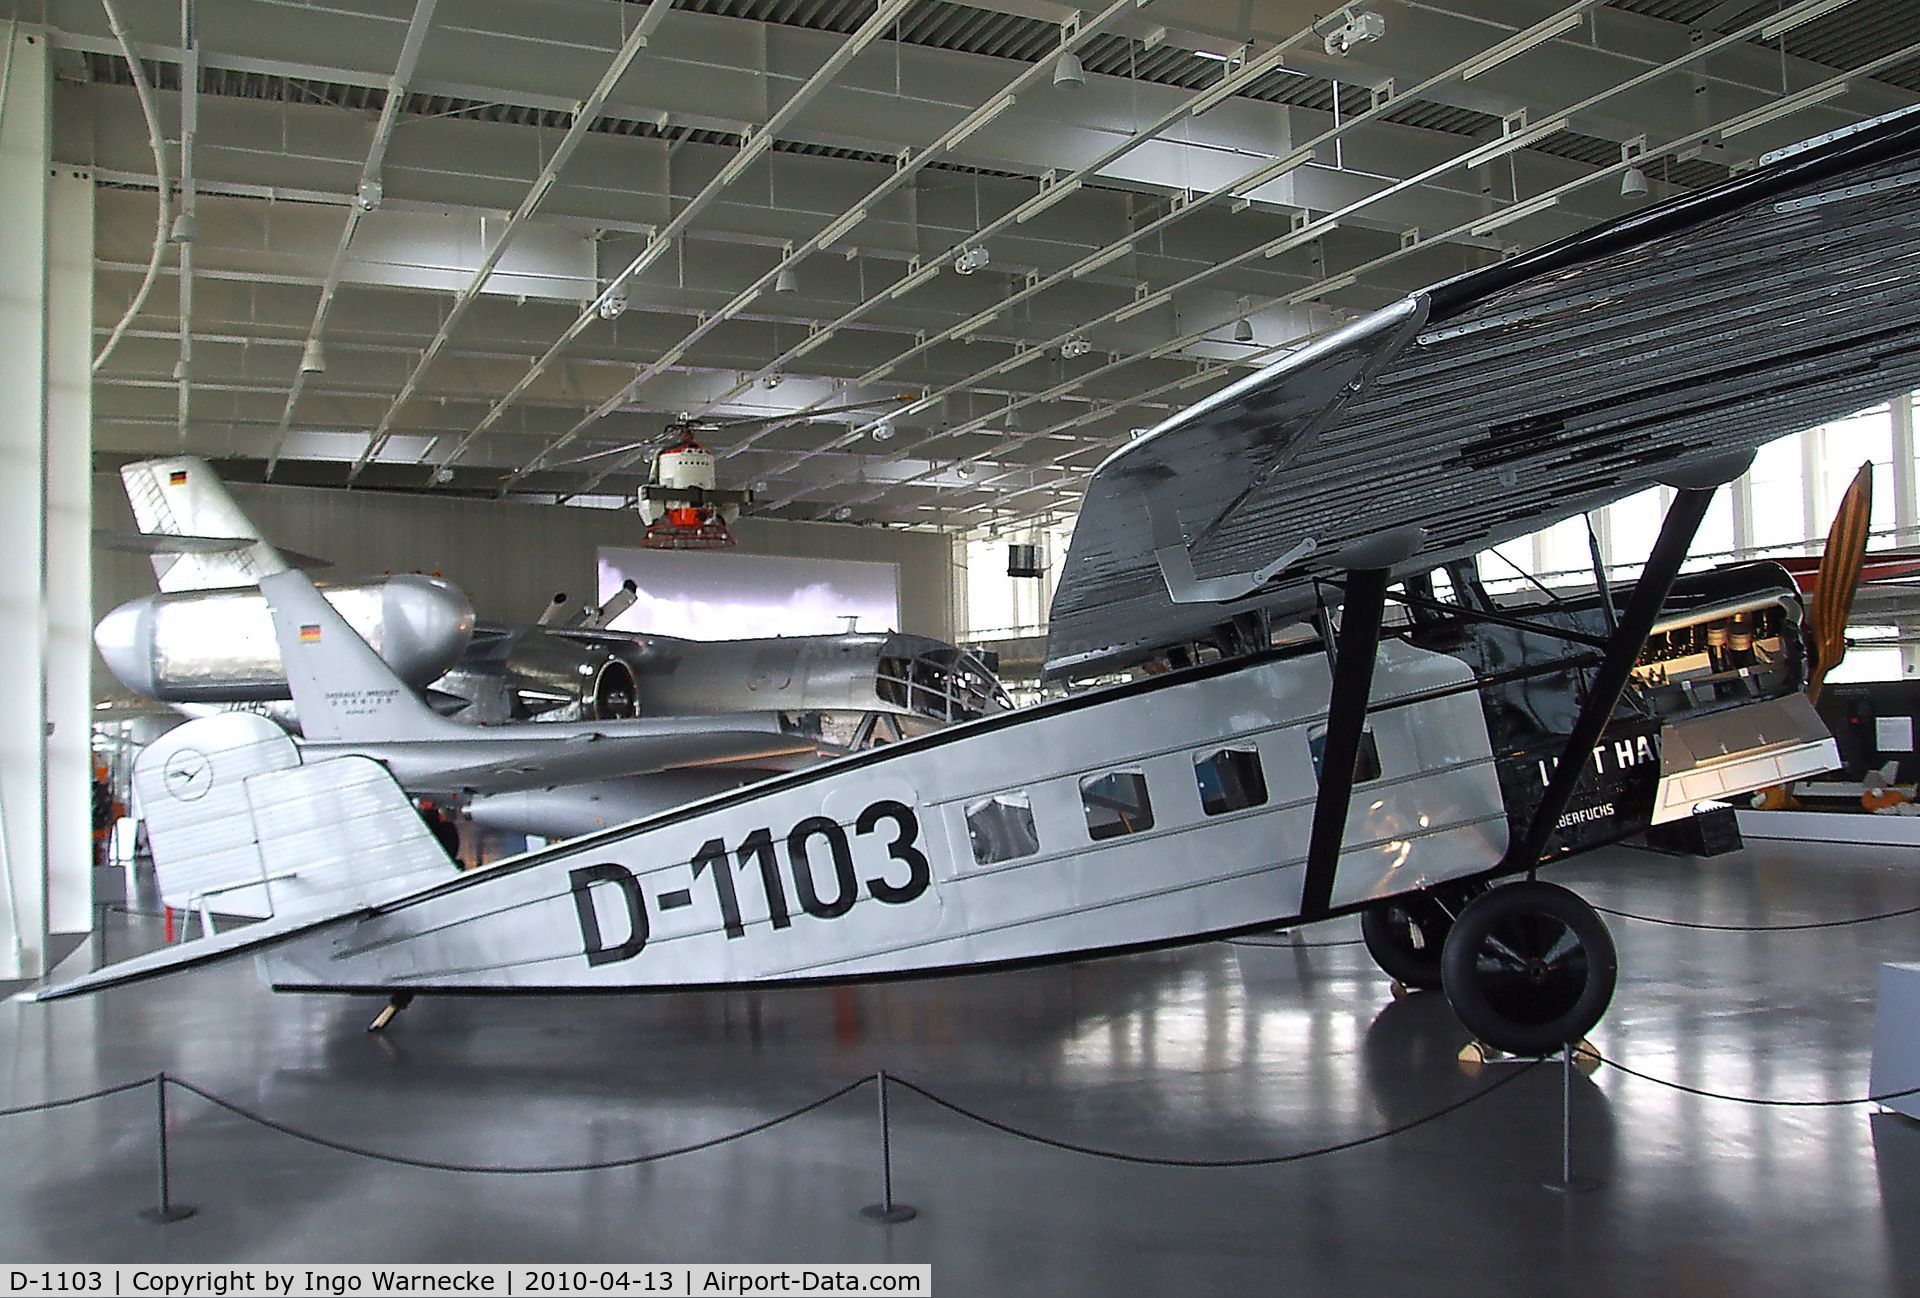 D-1103, Dornier Do B Merkur Replica C/N 88, Dornier Do B Merkur (static replica) at the Dornier Museum, Friedrichshafen